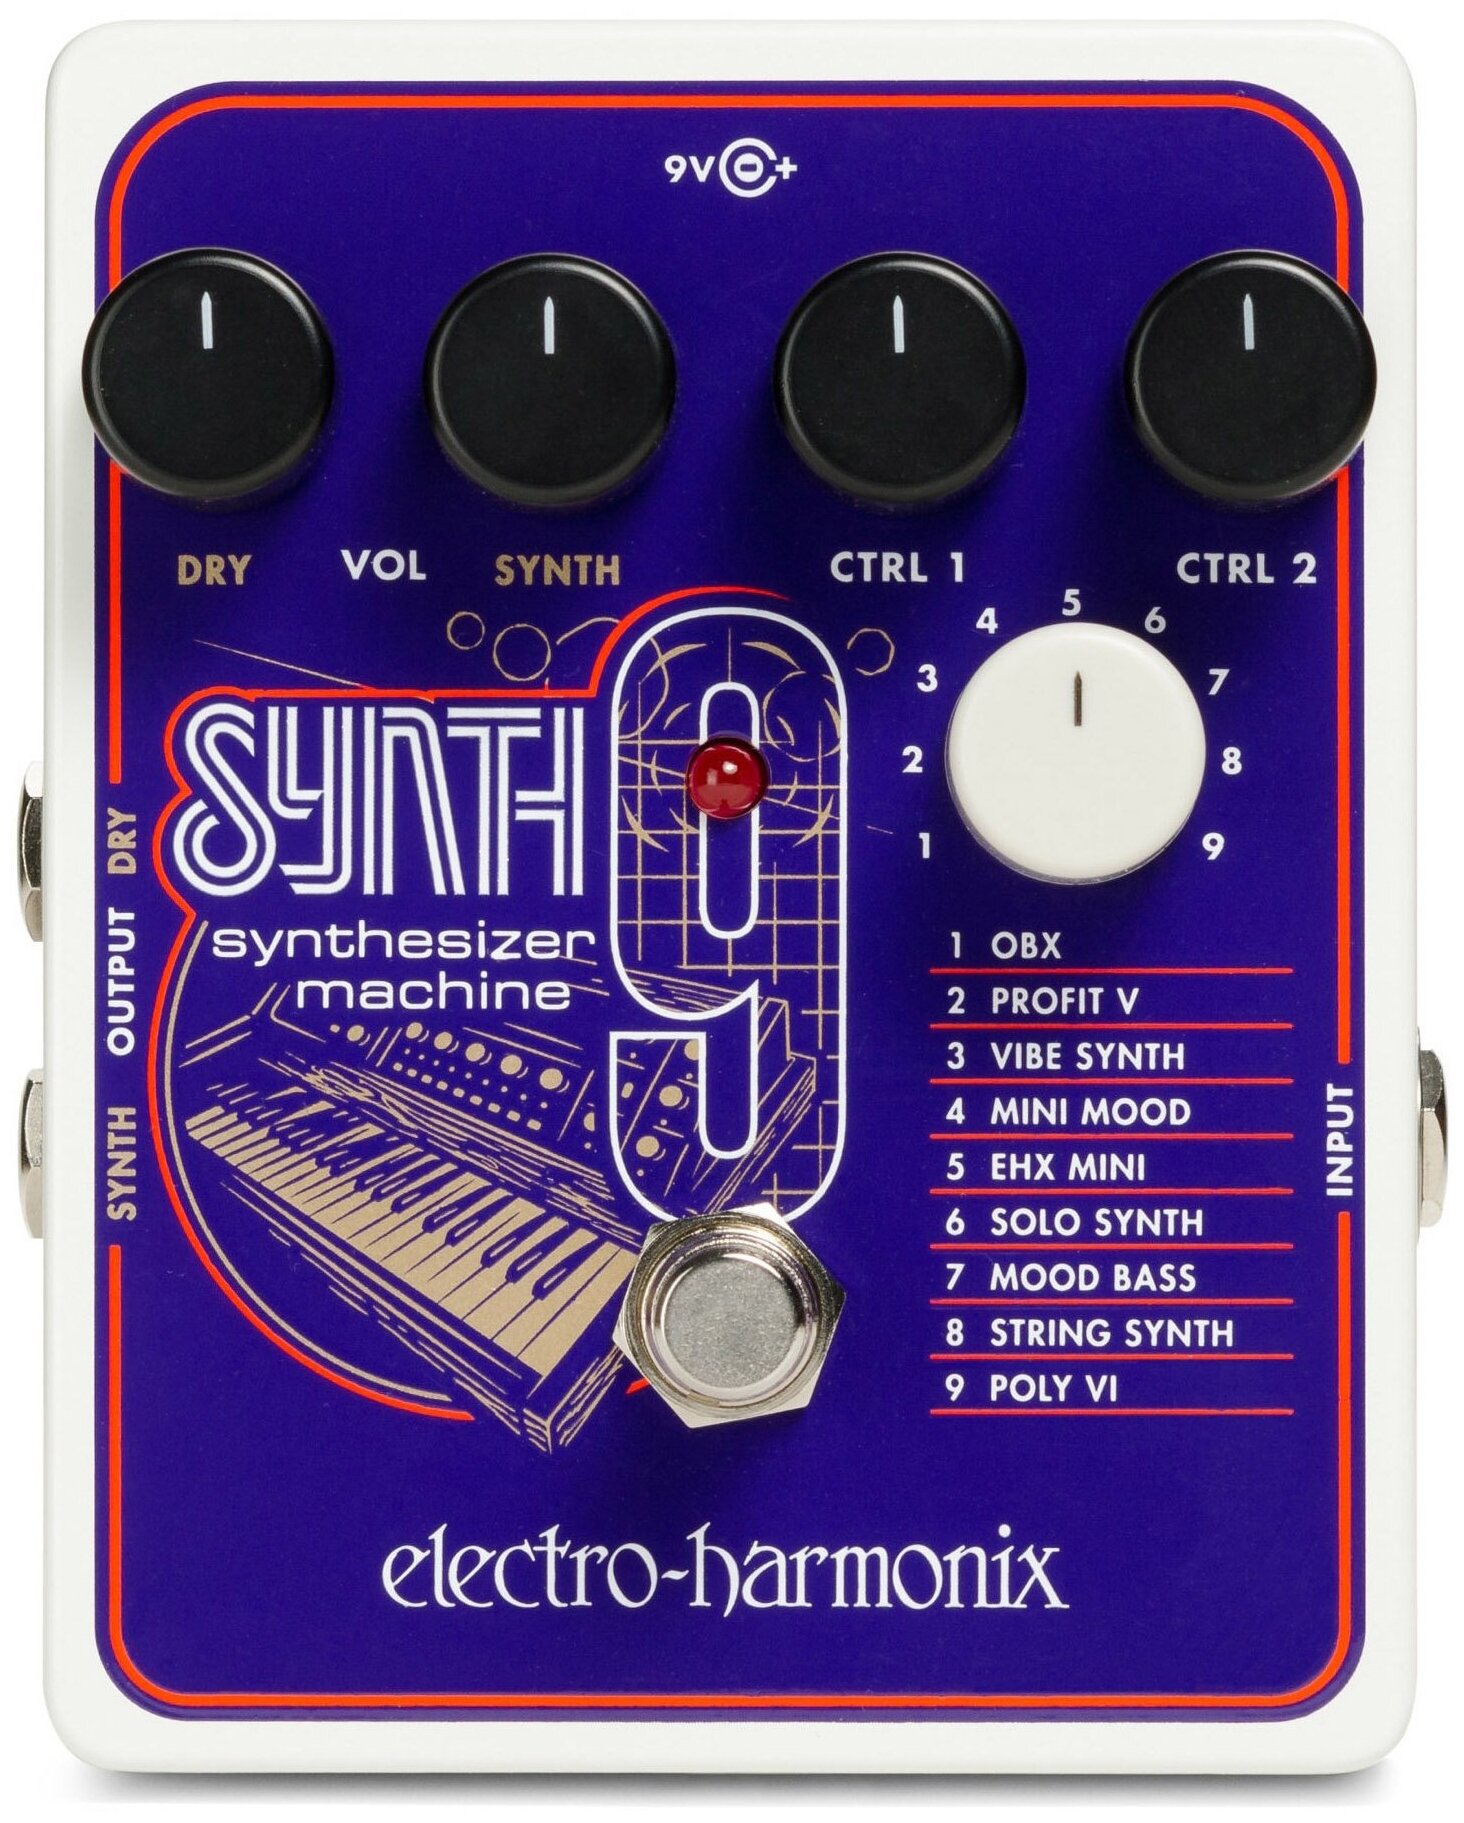 Electro-Harmonix (EHX) SYNTH9 Synthesizer